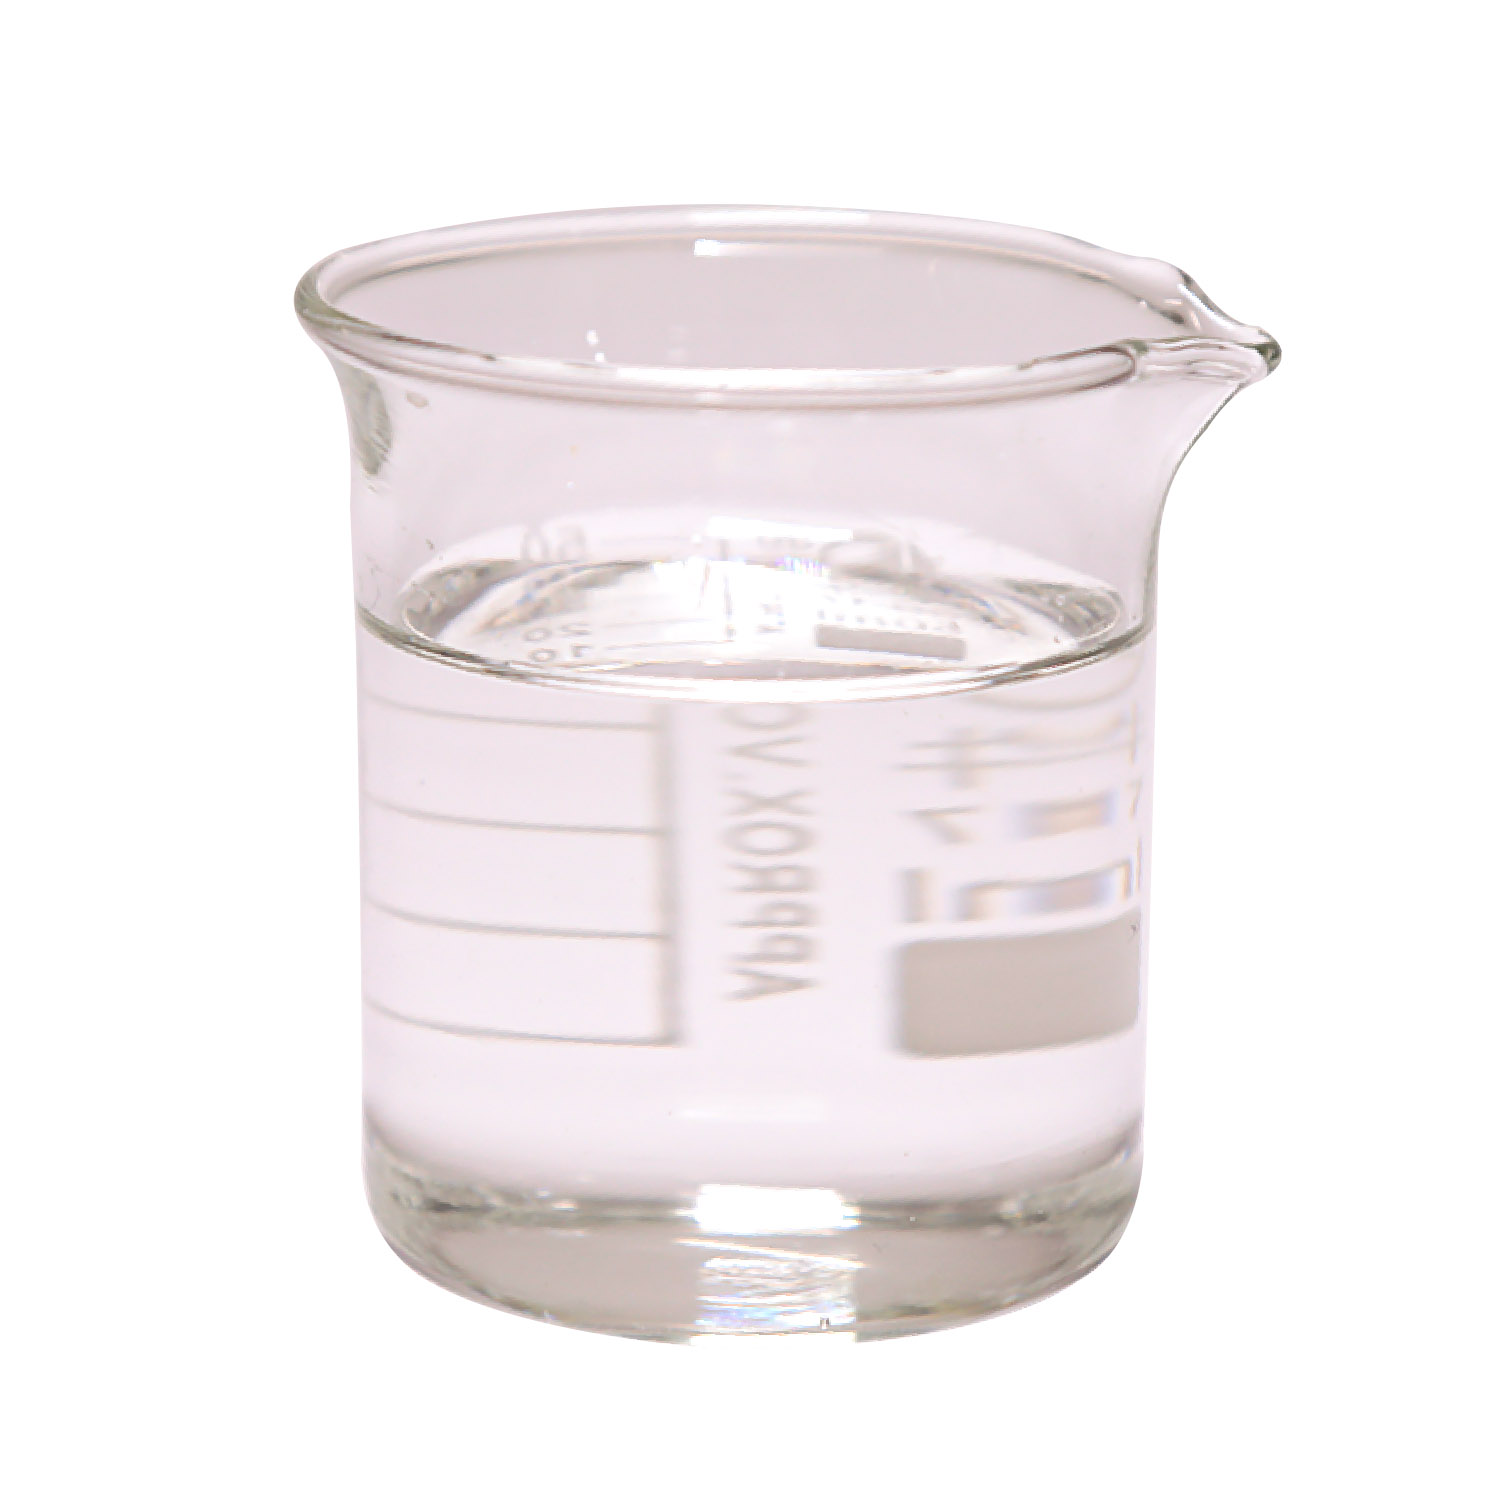 購入透明な液体塩化アセチル キャス 75-36-5,透明な液体塩化アセチル キャス 75-36-5価格,透明な液体塩化アセチル キャス 75-36-5ブランド,透明な液体塩化アセチル キャス 75-36-5メーカー,透明な液体塩化アセチル キャス 75-36-5市場,透明な液体塩化アセチル キャス 75-36-5会社